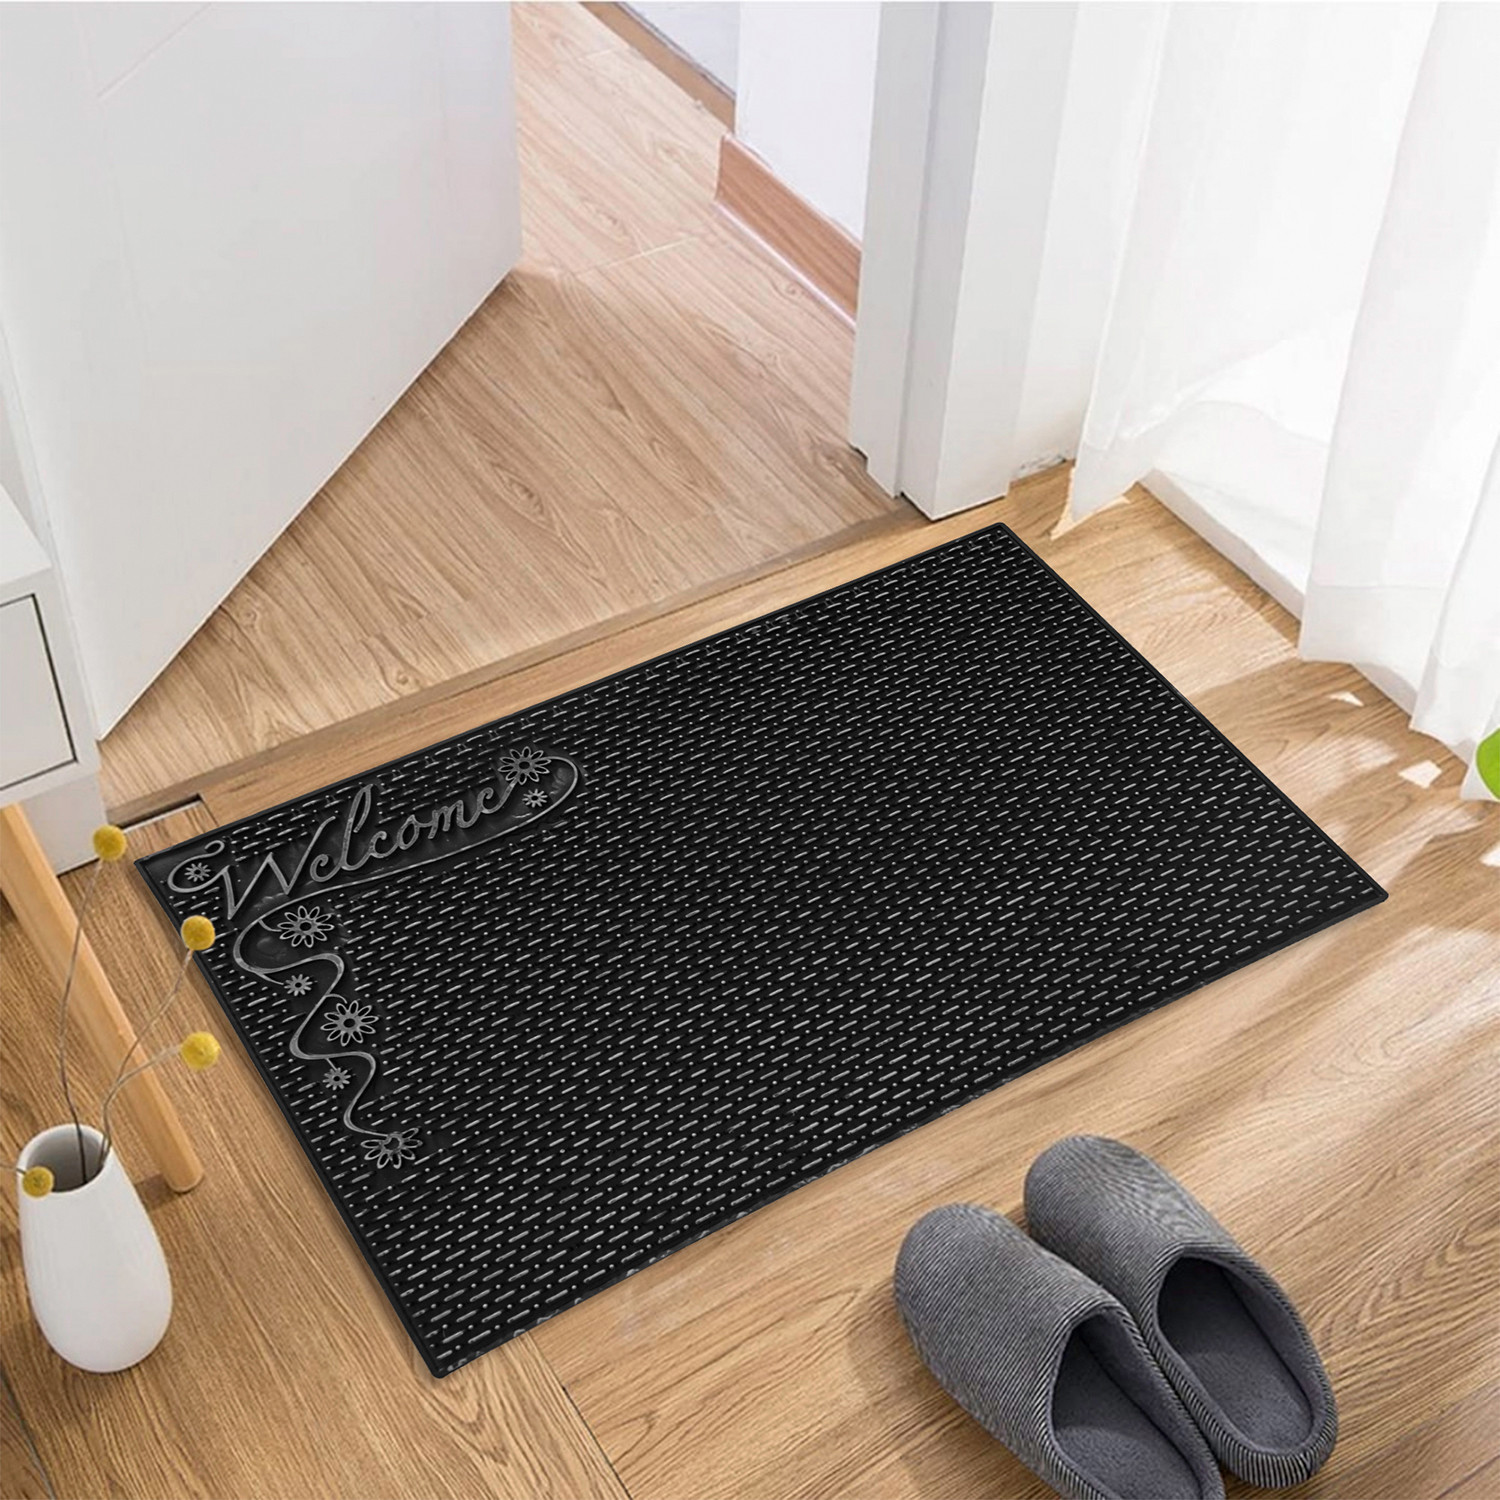 Kuber Industries Door Mat | Rubber Mud Trapper Mat | Welcome Mat | Floor mat | Door Mat for Home Entrance | Bathroom Mat | Entry Way Doormat | Black & Silver